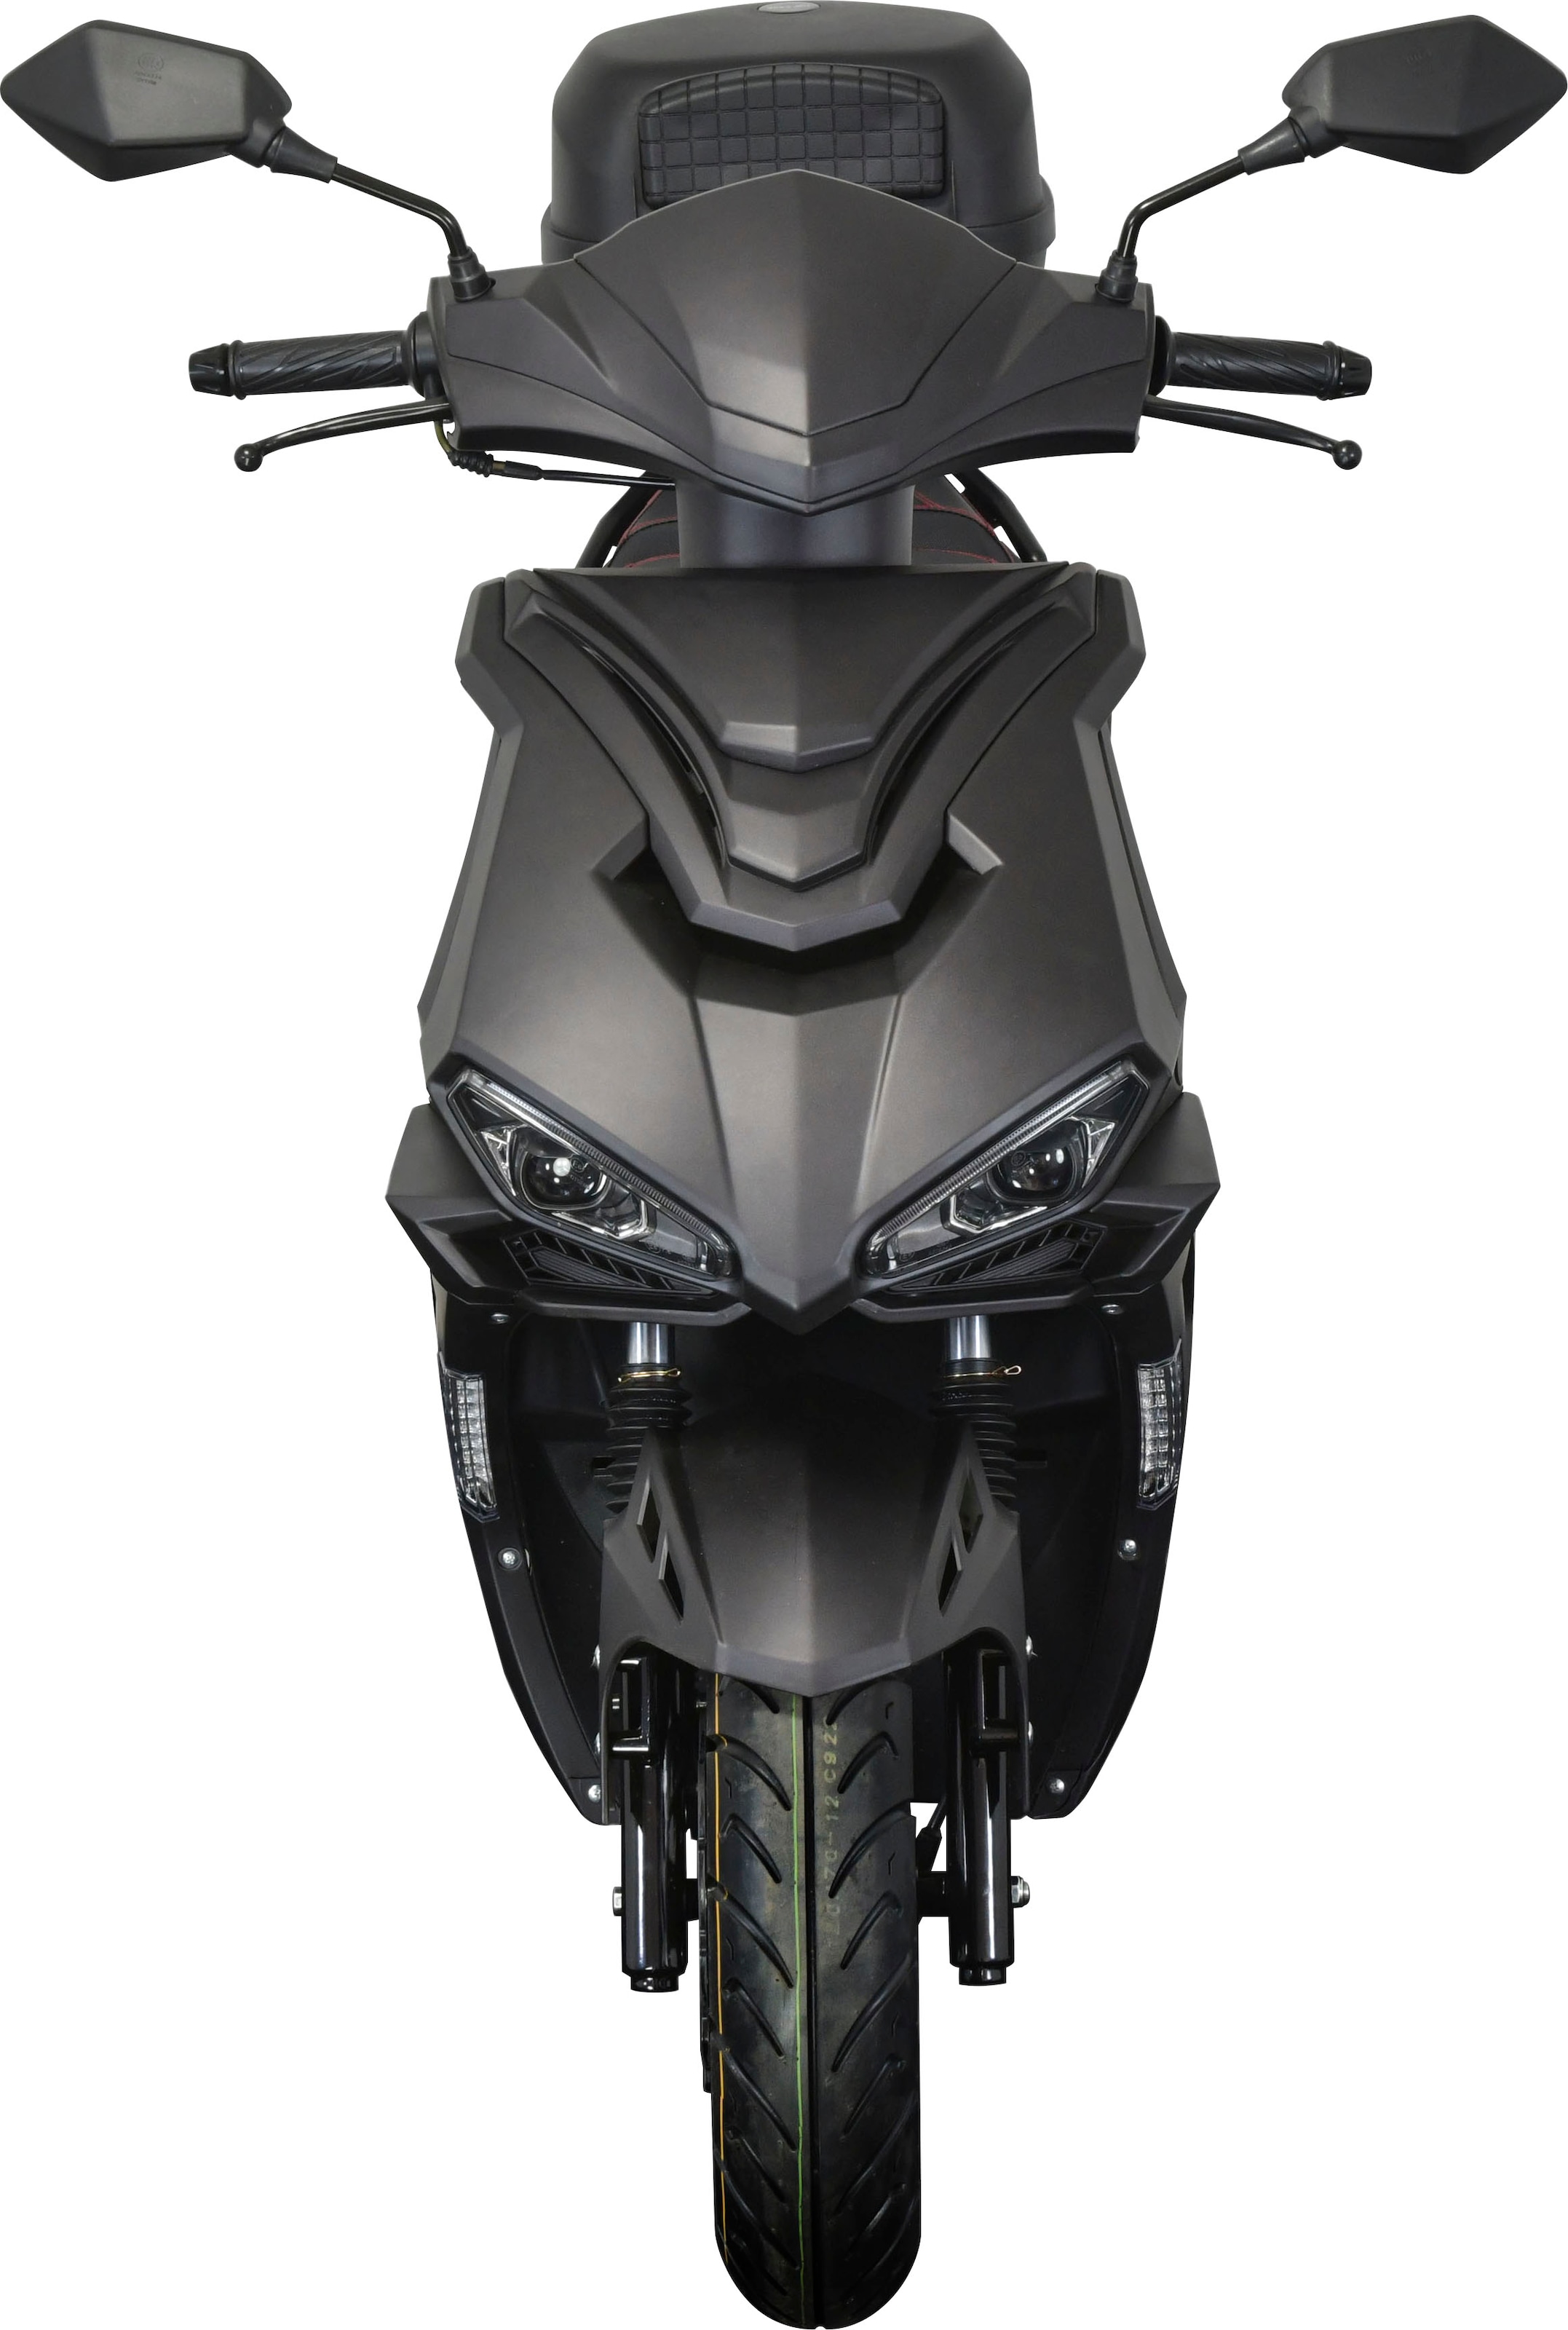 Motorroller 50ccm - 45 km/h - 4 Takt - ZNEN Fantasy EURO 4 Sport